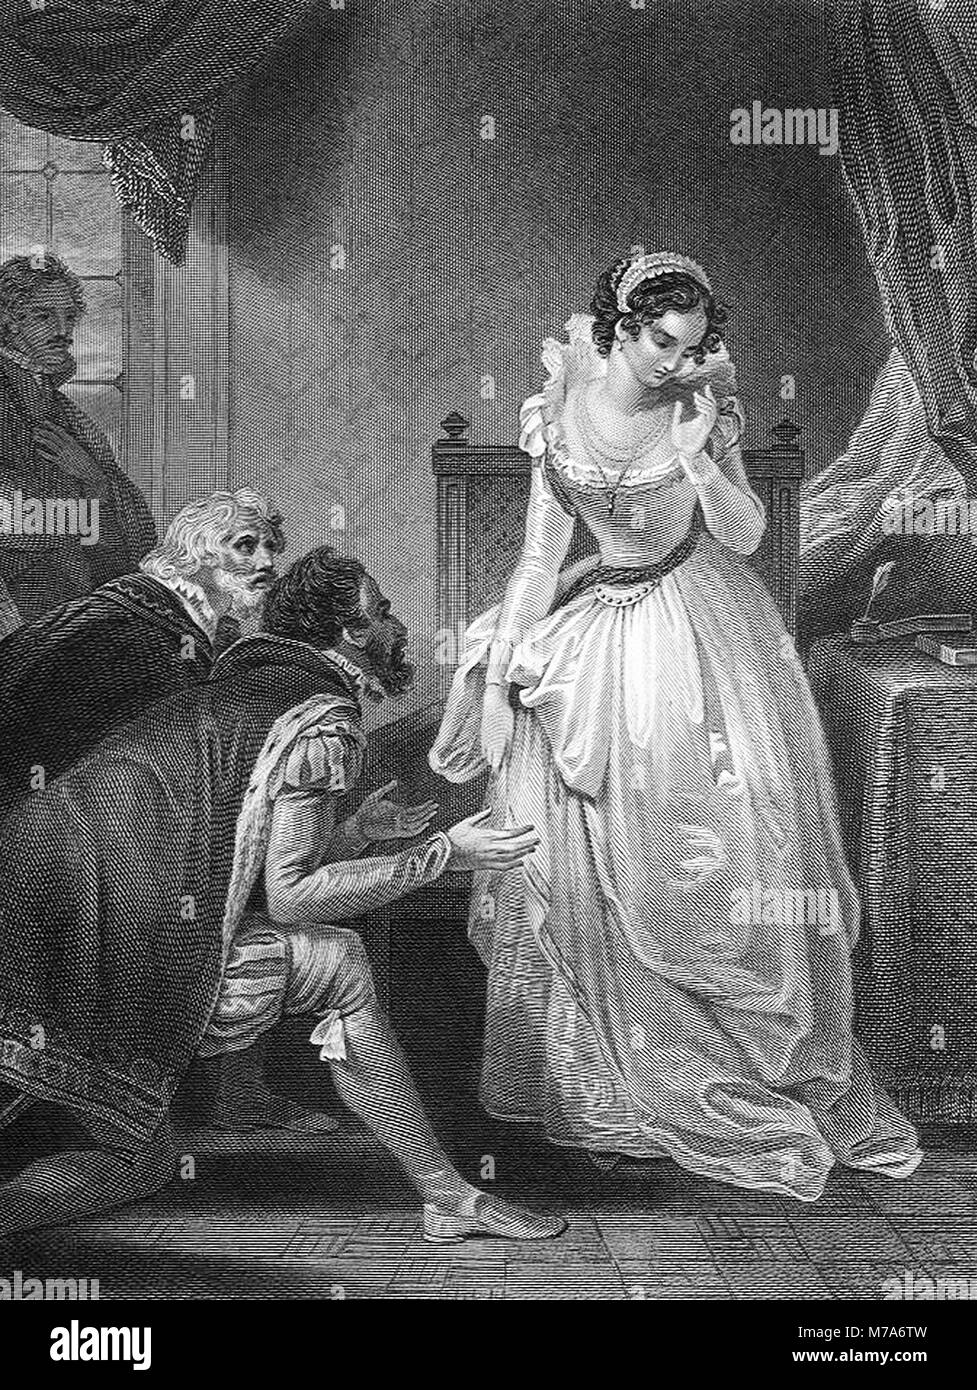 Lady Jane Grey rifiutando la corona. Lady Jane Grey regnò come regina dell'Inghilterra per 9 giorni nel 1553. Foto Stock